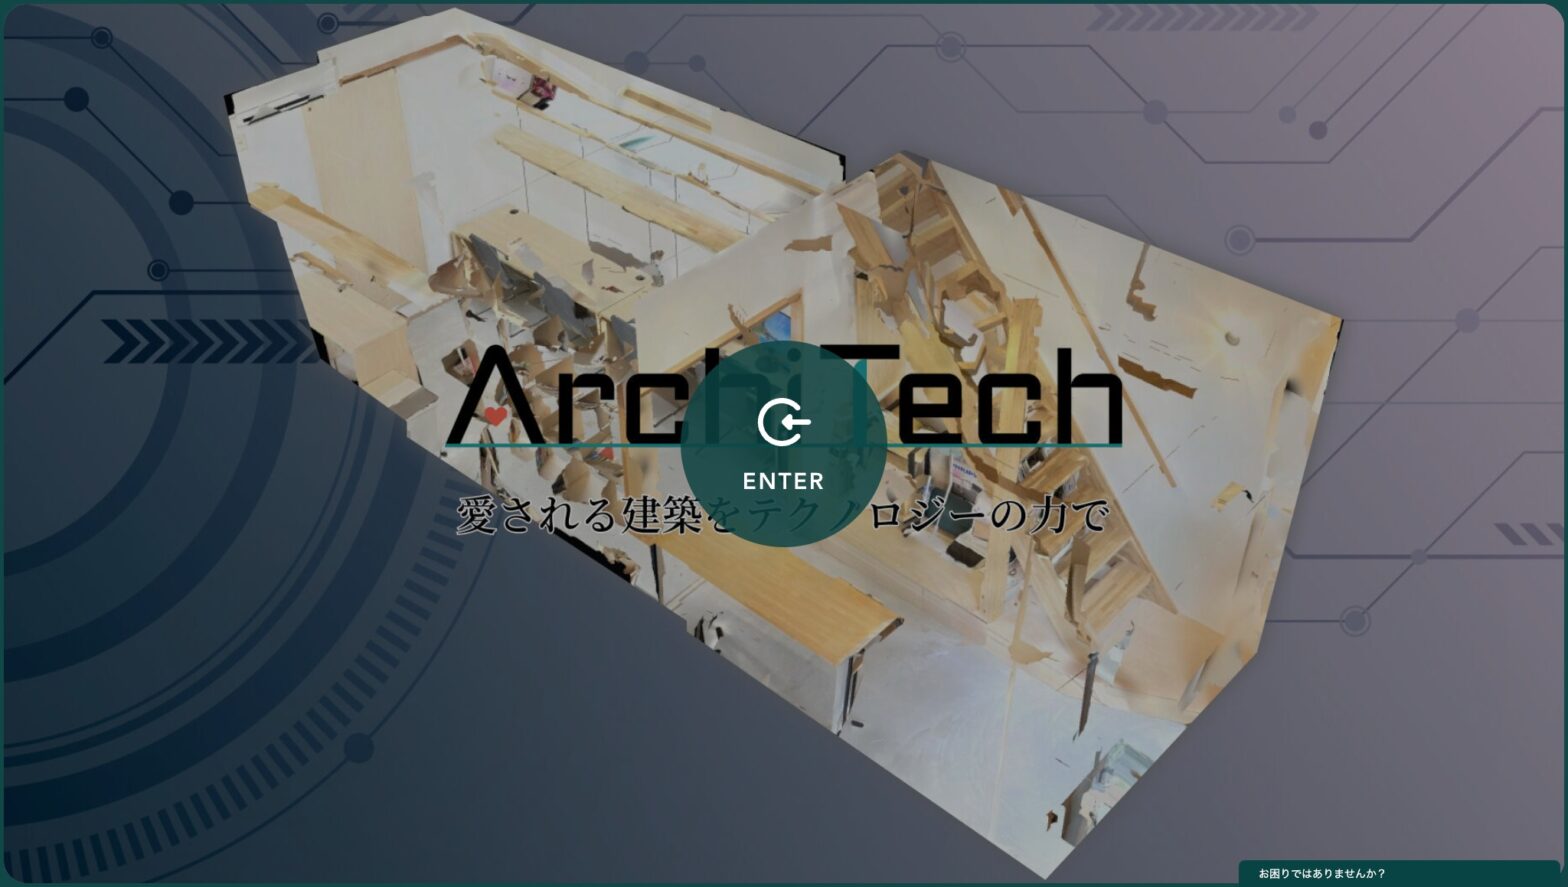 ArchiTechオフィス